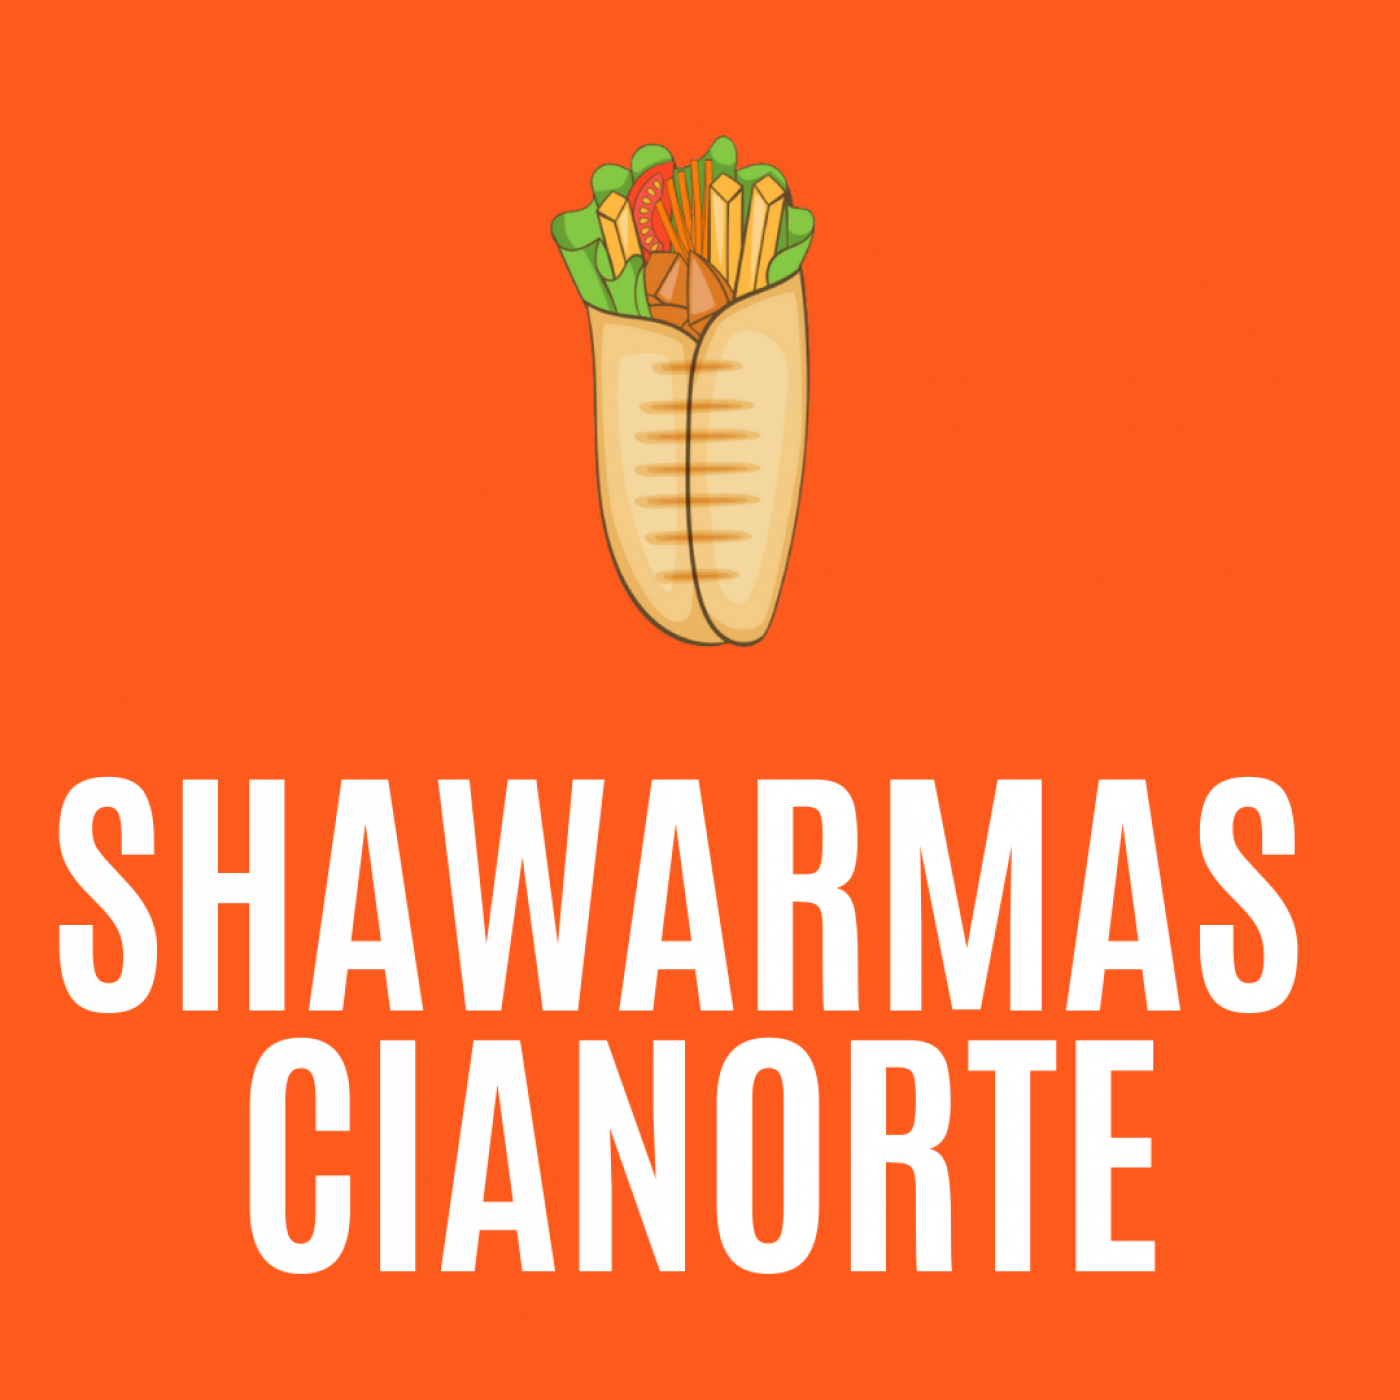 Shawarmas Cianorte